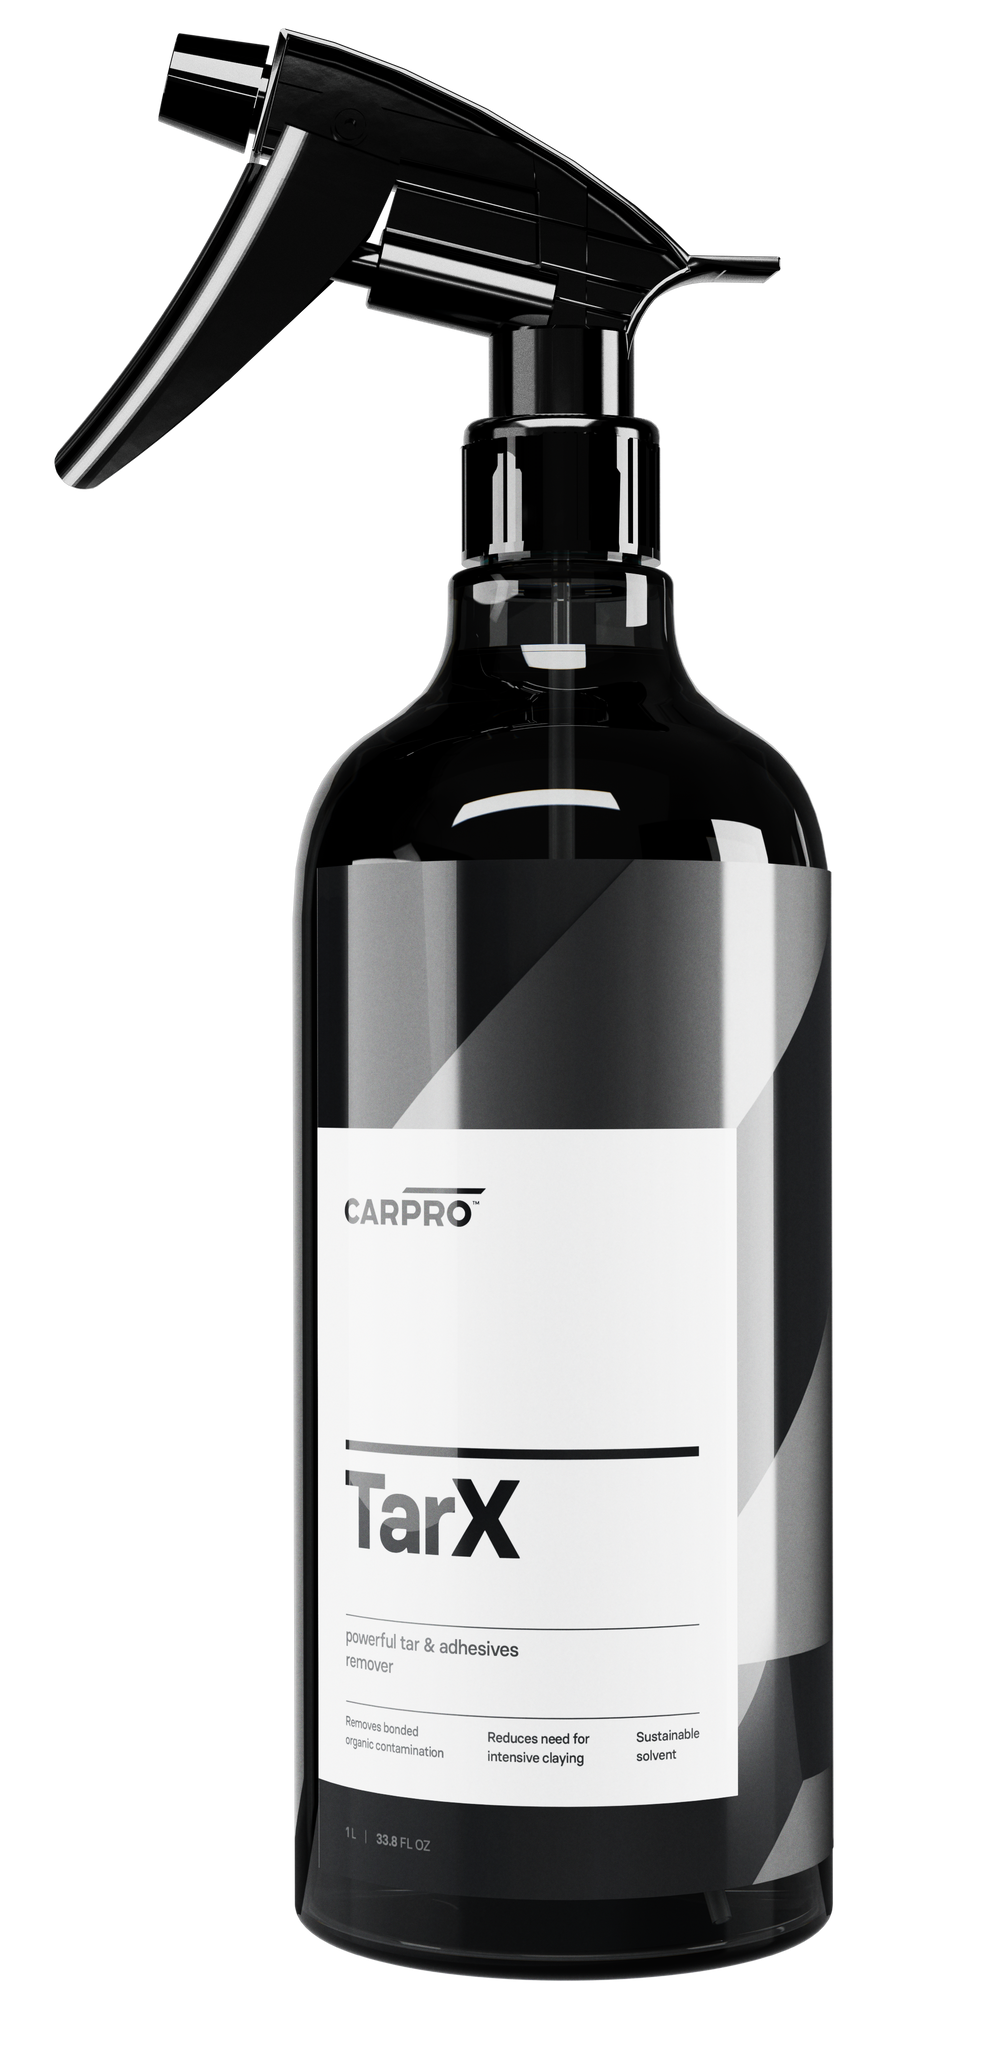 CARPRO TarX 1L - Tar and adhesives remover